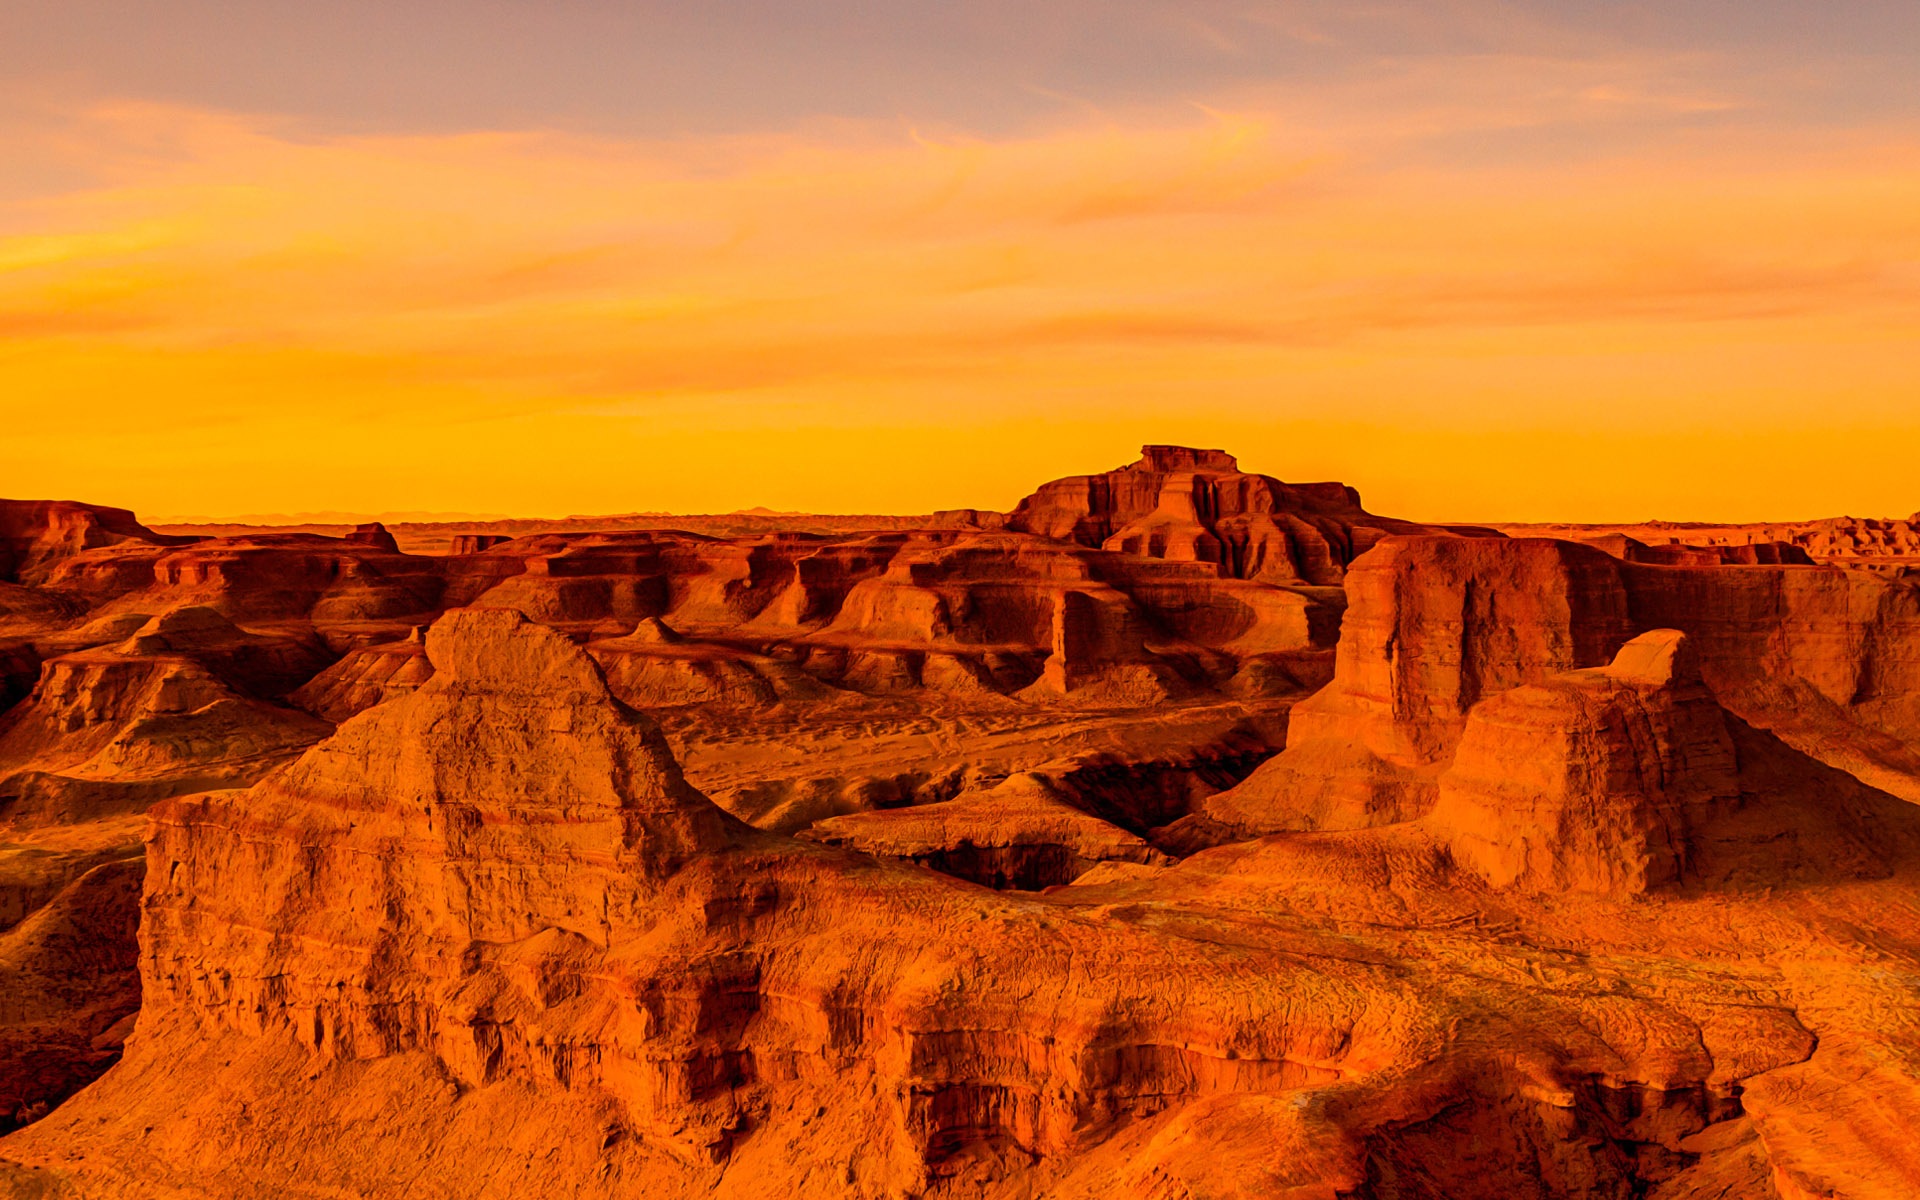 Les déserts chauds et arides, de Windows 8 fonds d'écran widescreen panoramique #6 - 1920x1200